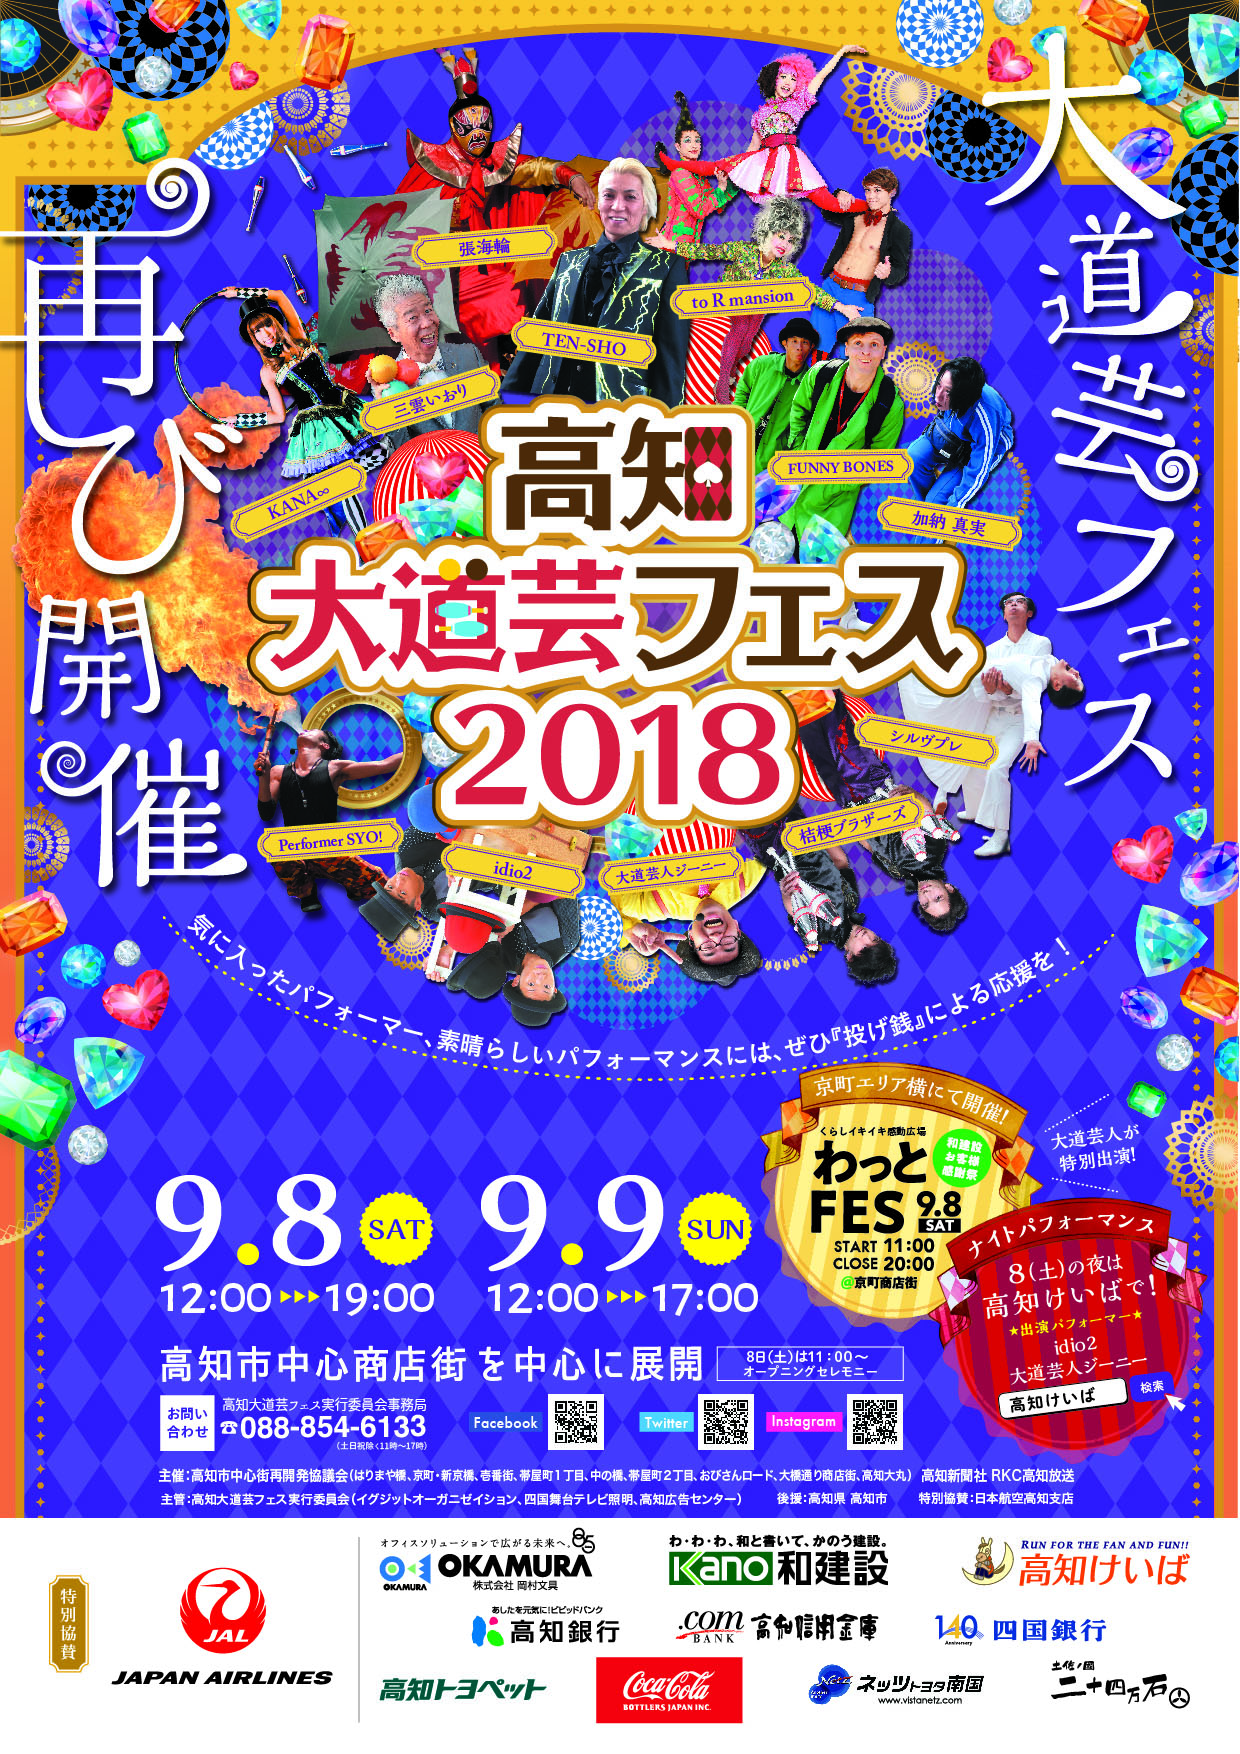 今年も高知大道芸フェスが開催されます